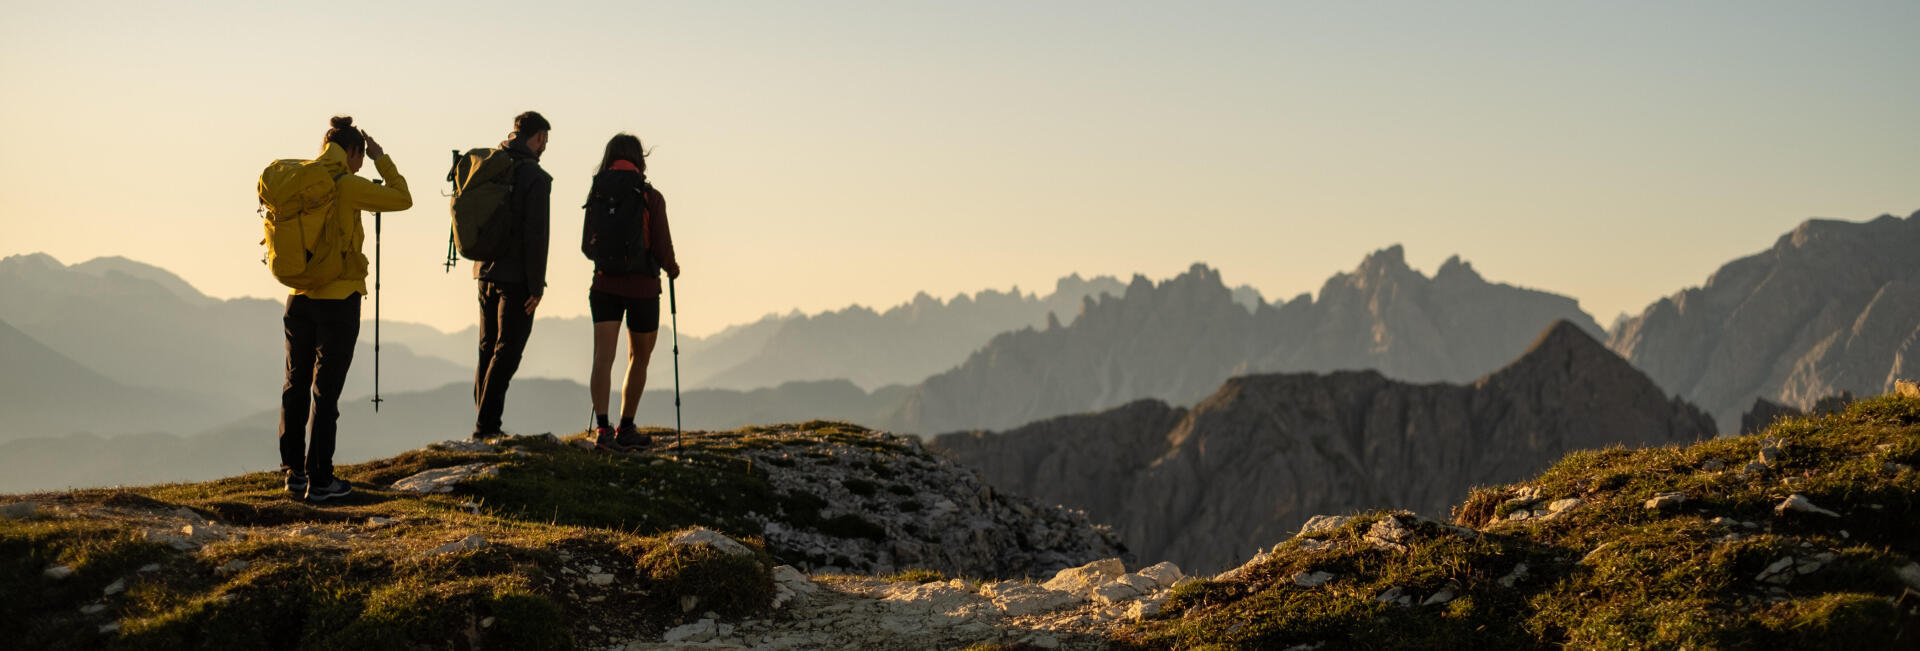 7 astuces pour vaincre l'acrophobie en randonnée